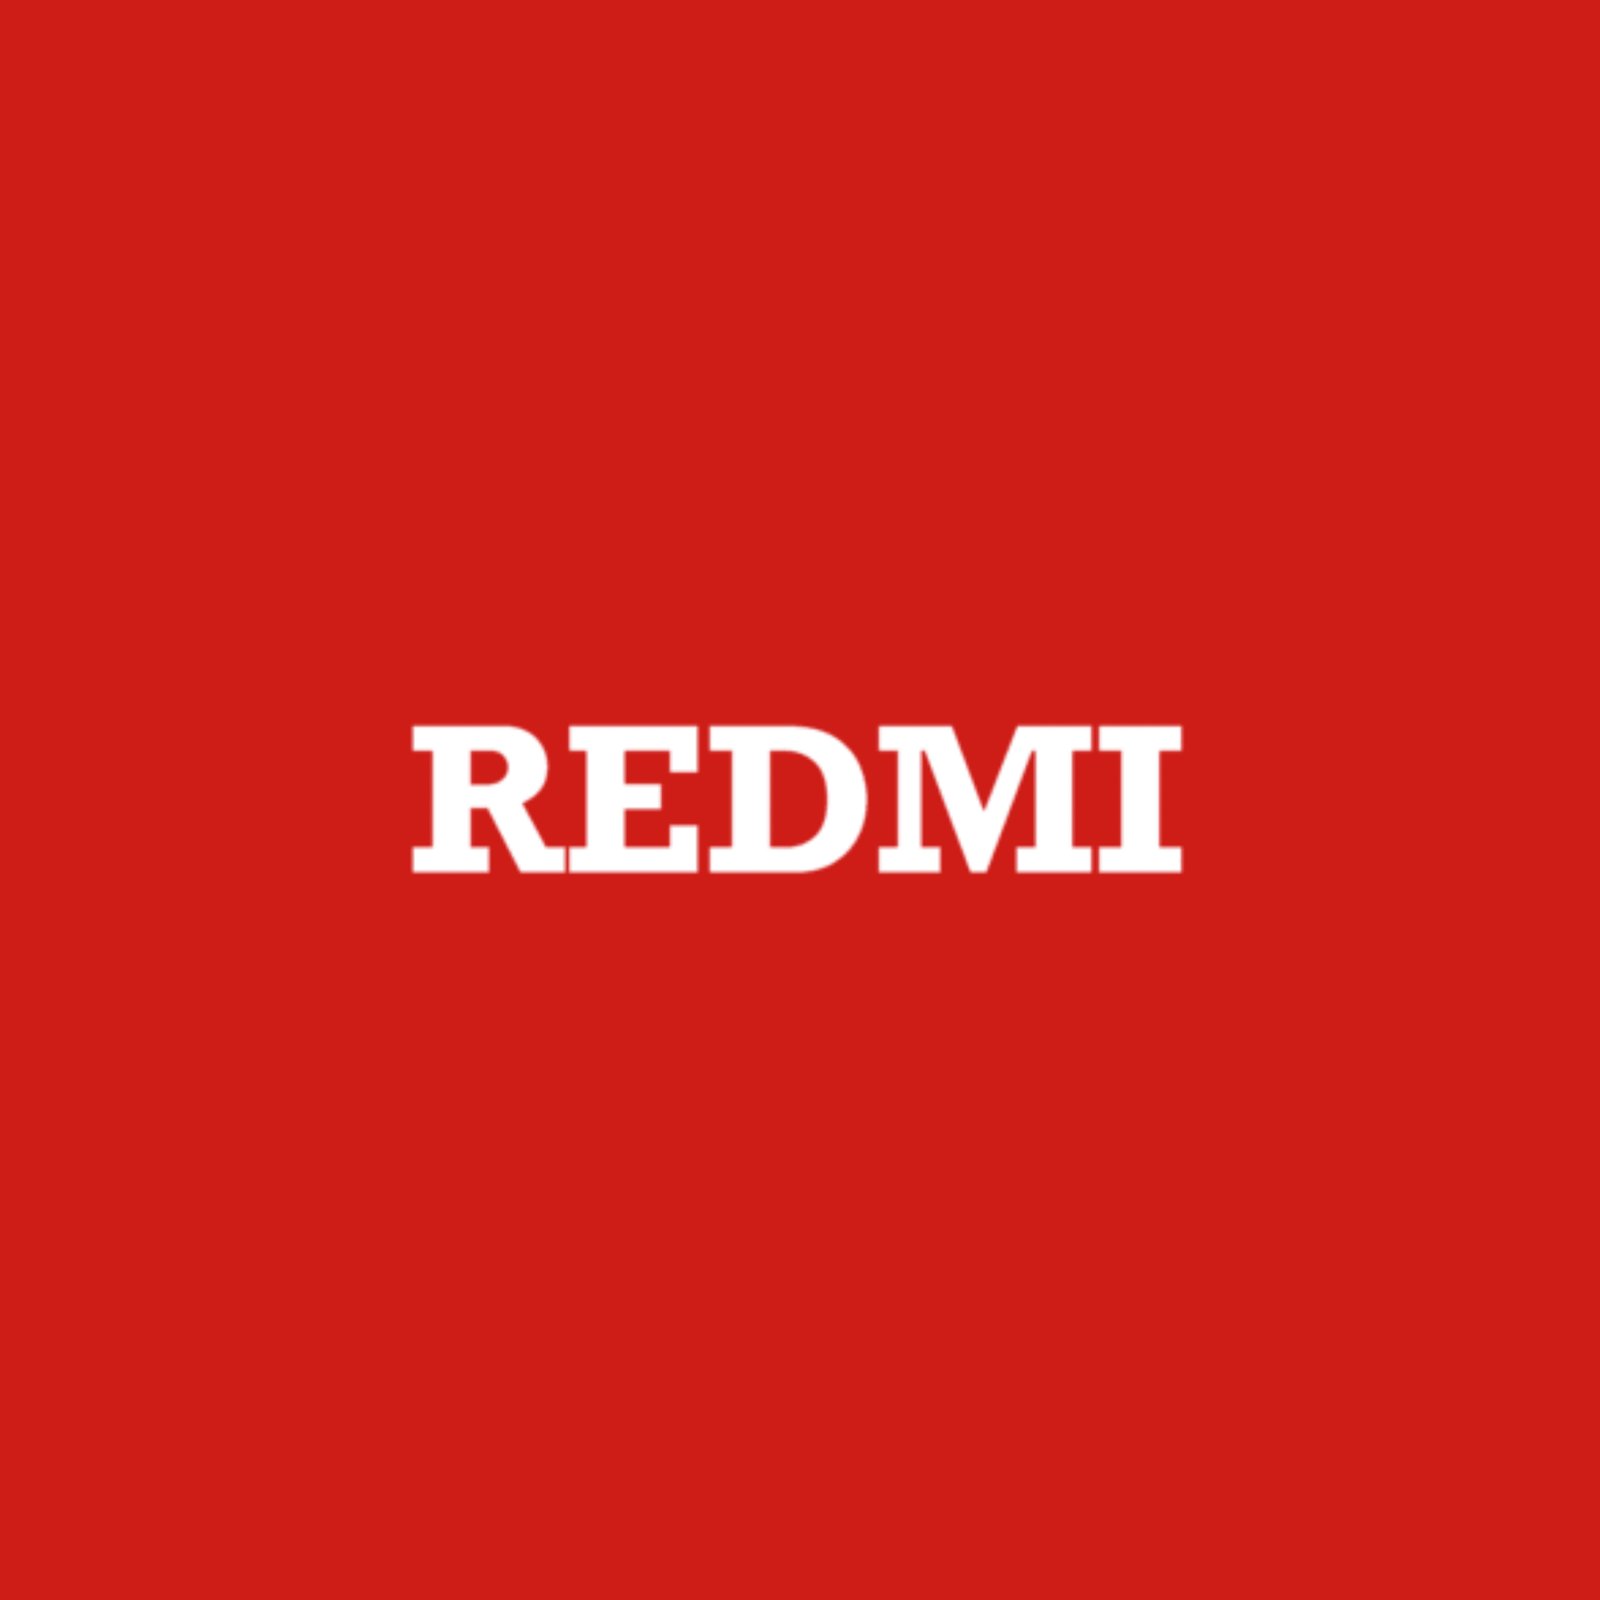 REDMI Academy Profile Picture